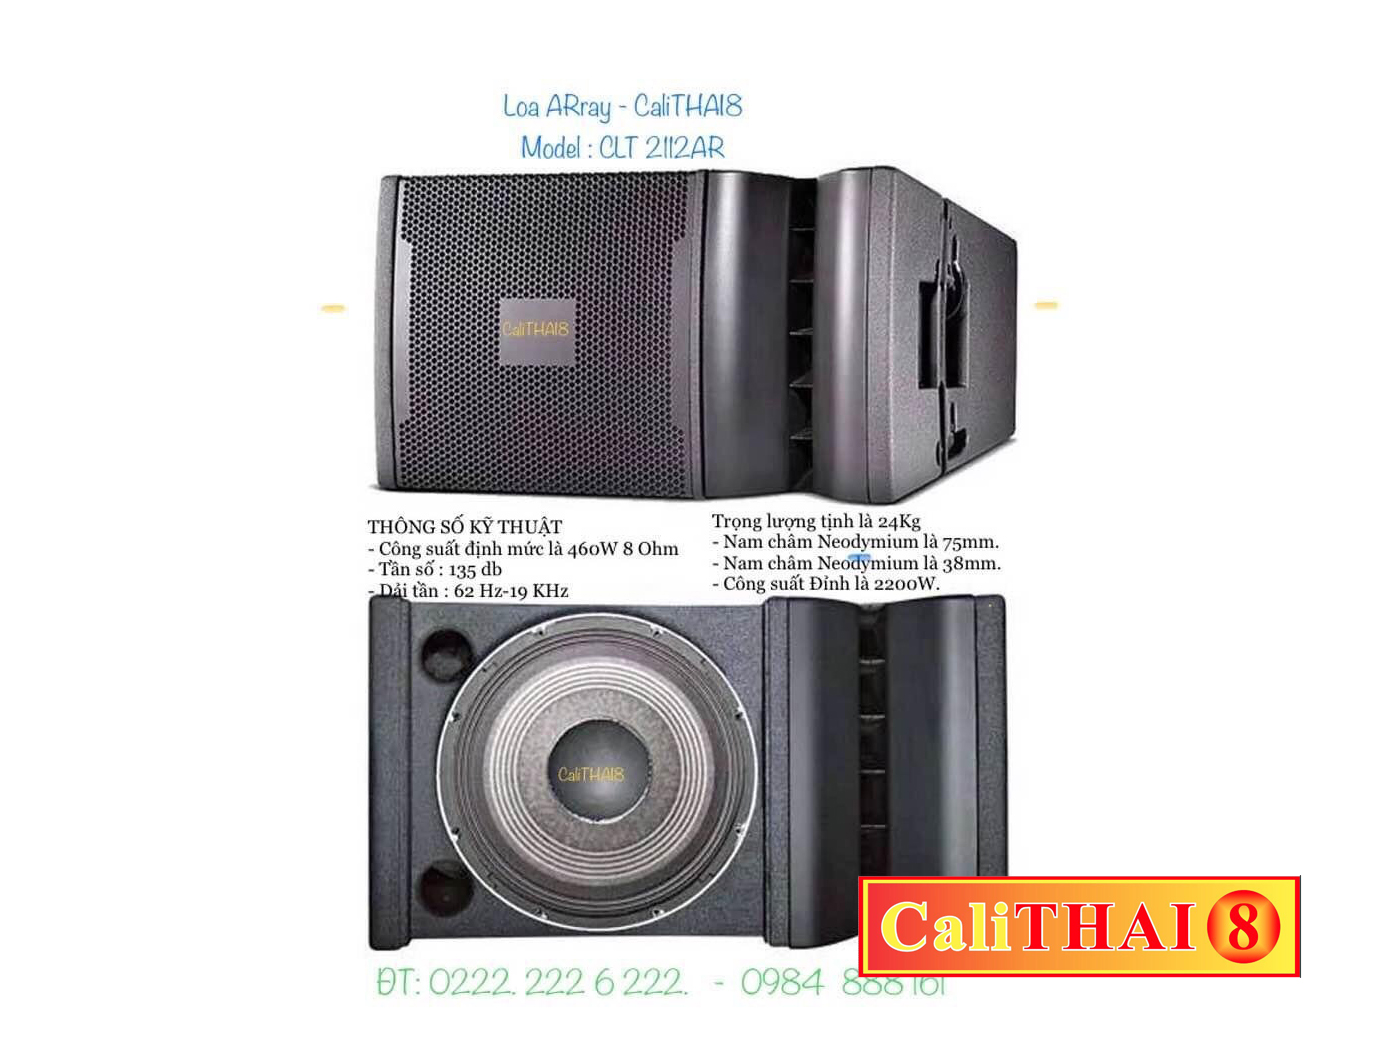 Loa Aray - CaliTHAI8 Mode CLT 2112AR